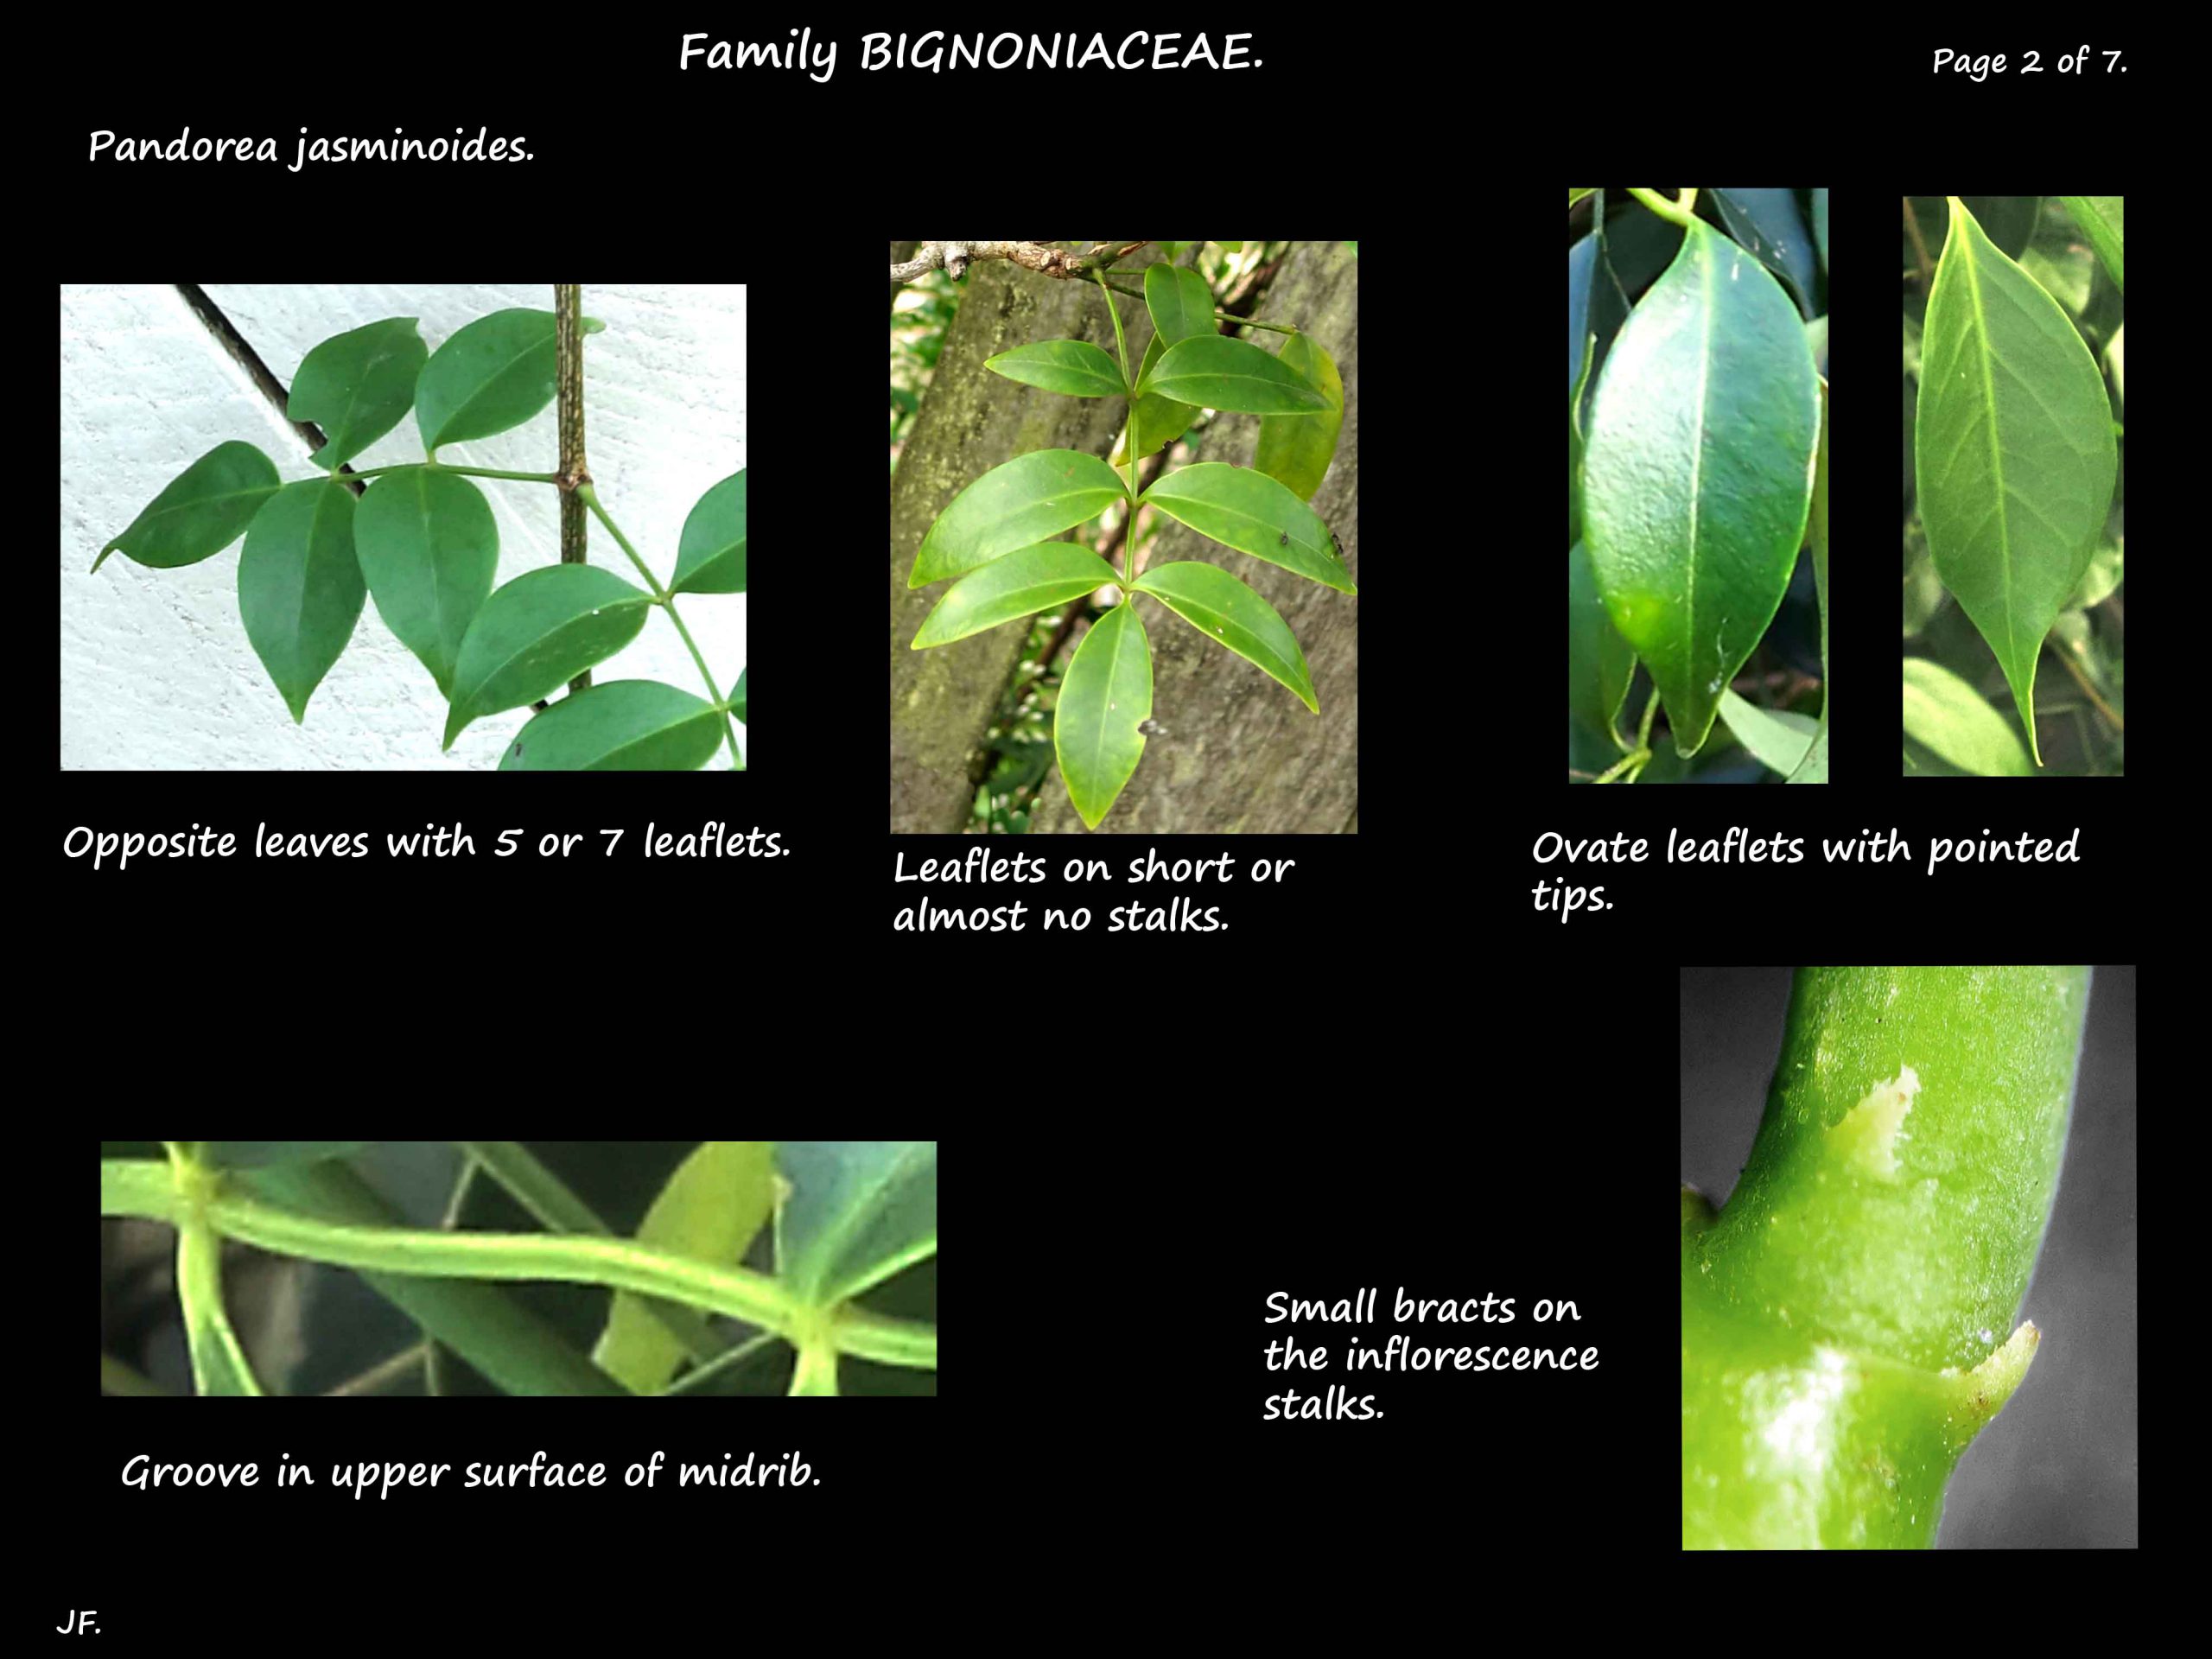 2 Pandorea jasminoides leaves